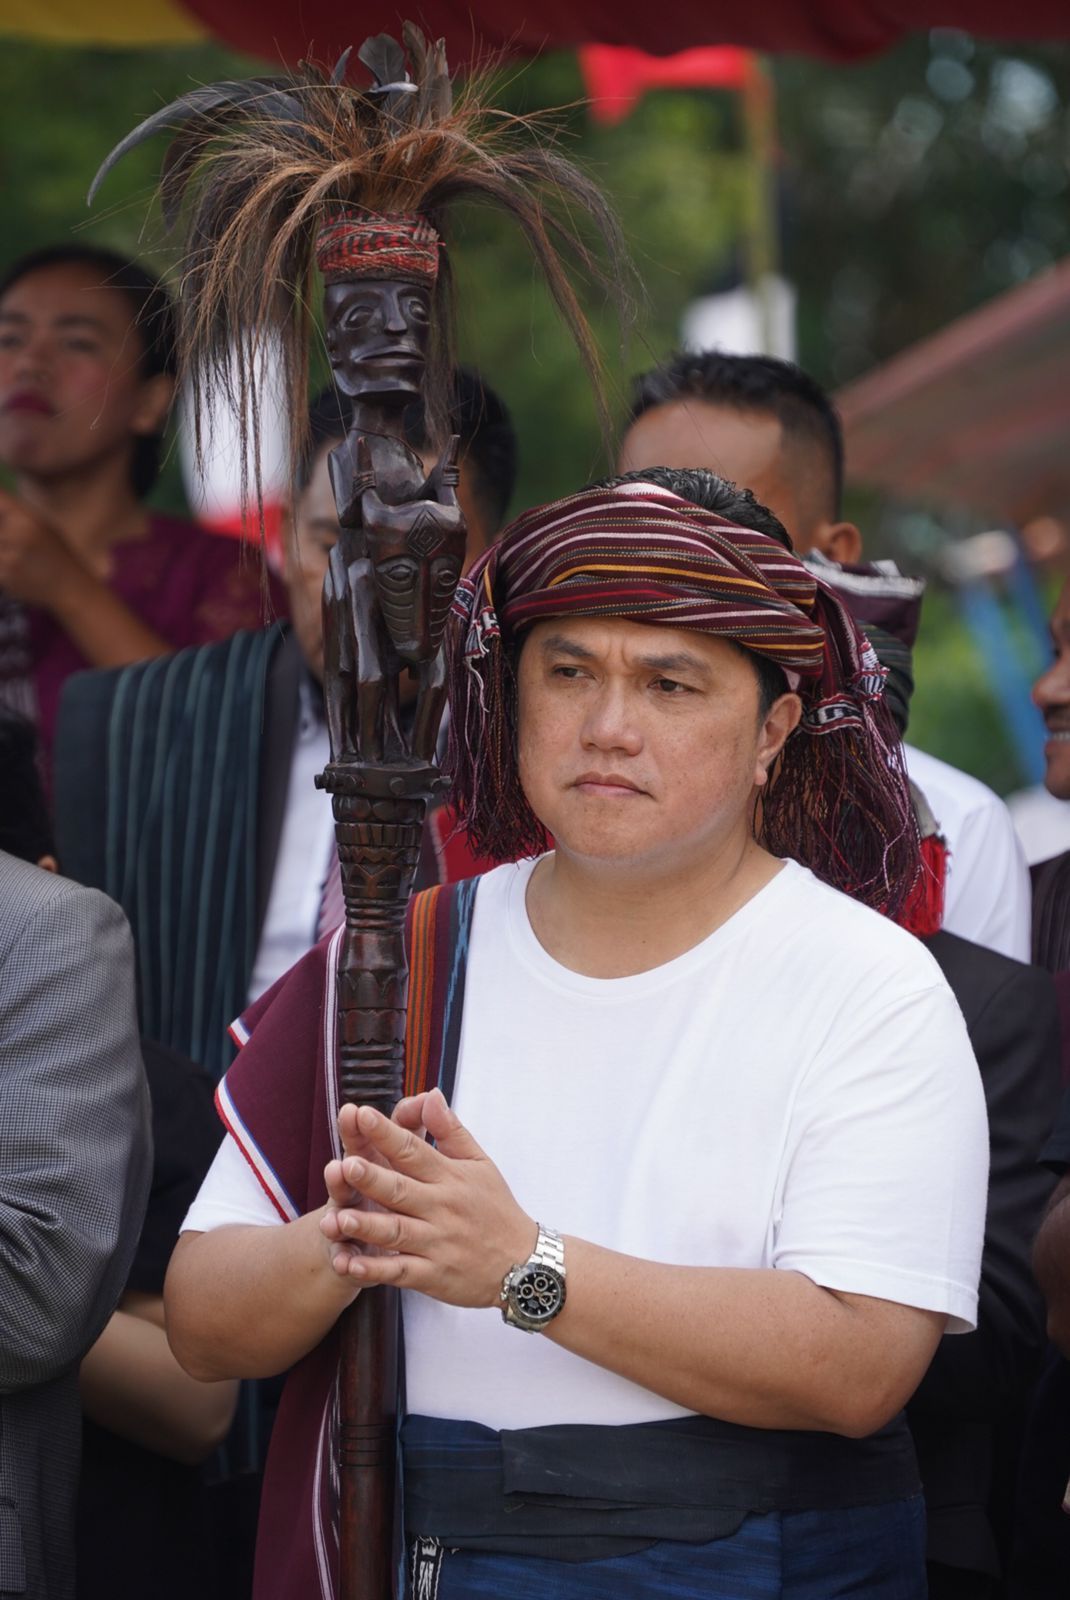 Menteri Badan Usaha Milik Negara (BUMN) Erick Thohir mendapatkan anugerah yaitu diangkat sebagai anak oleh suku bangsa Batak dalam upacara adat Mangain Anak dan Mangalahat Horbo.